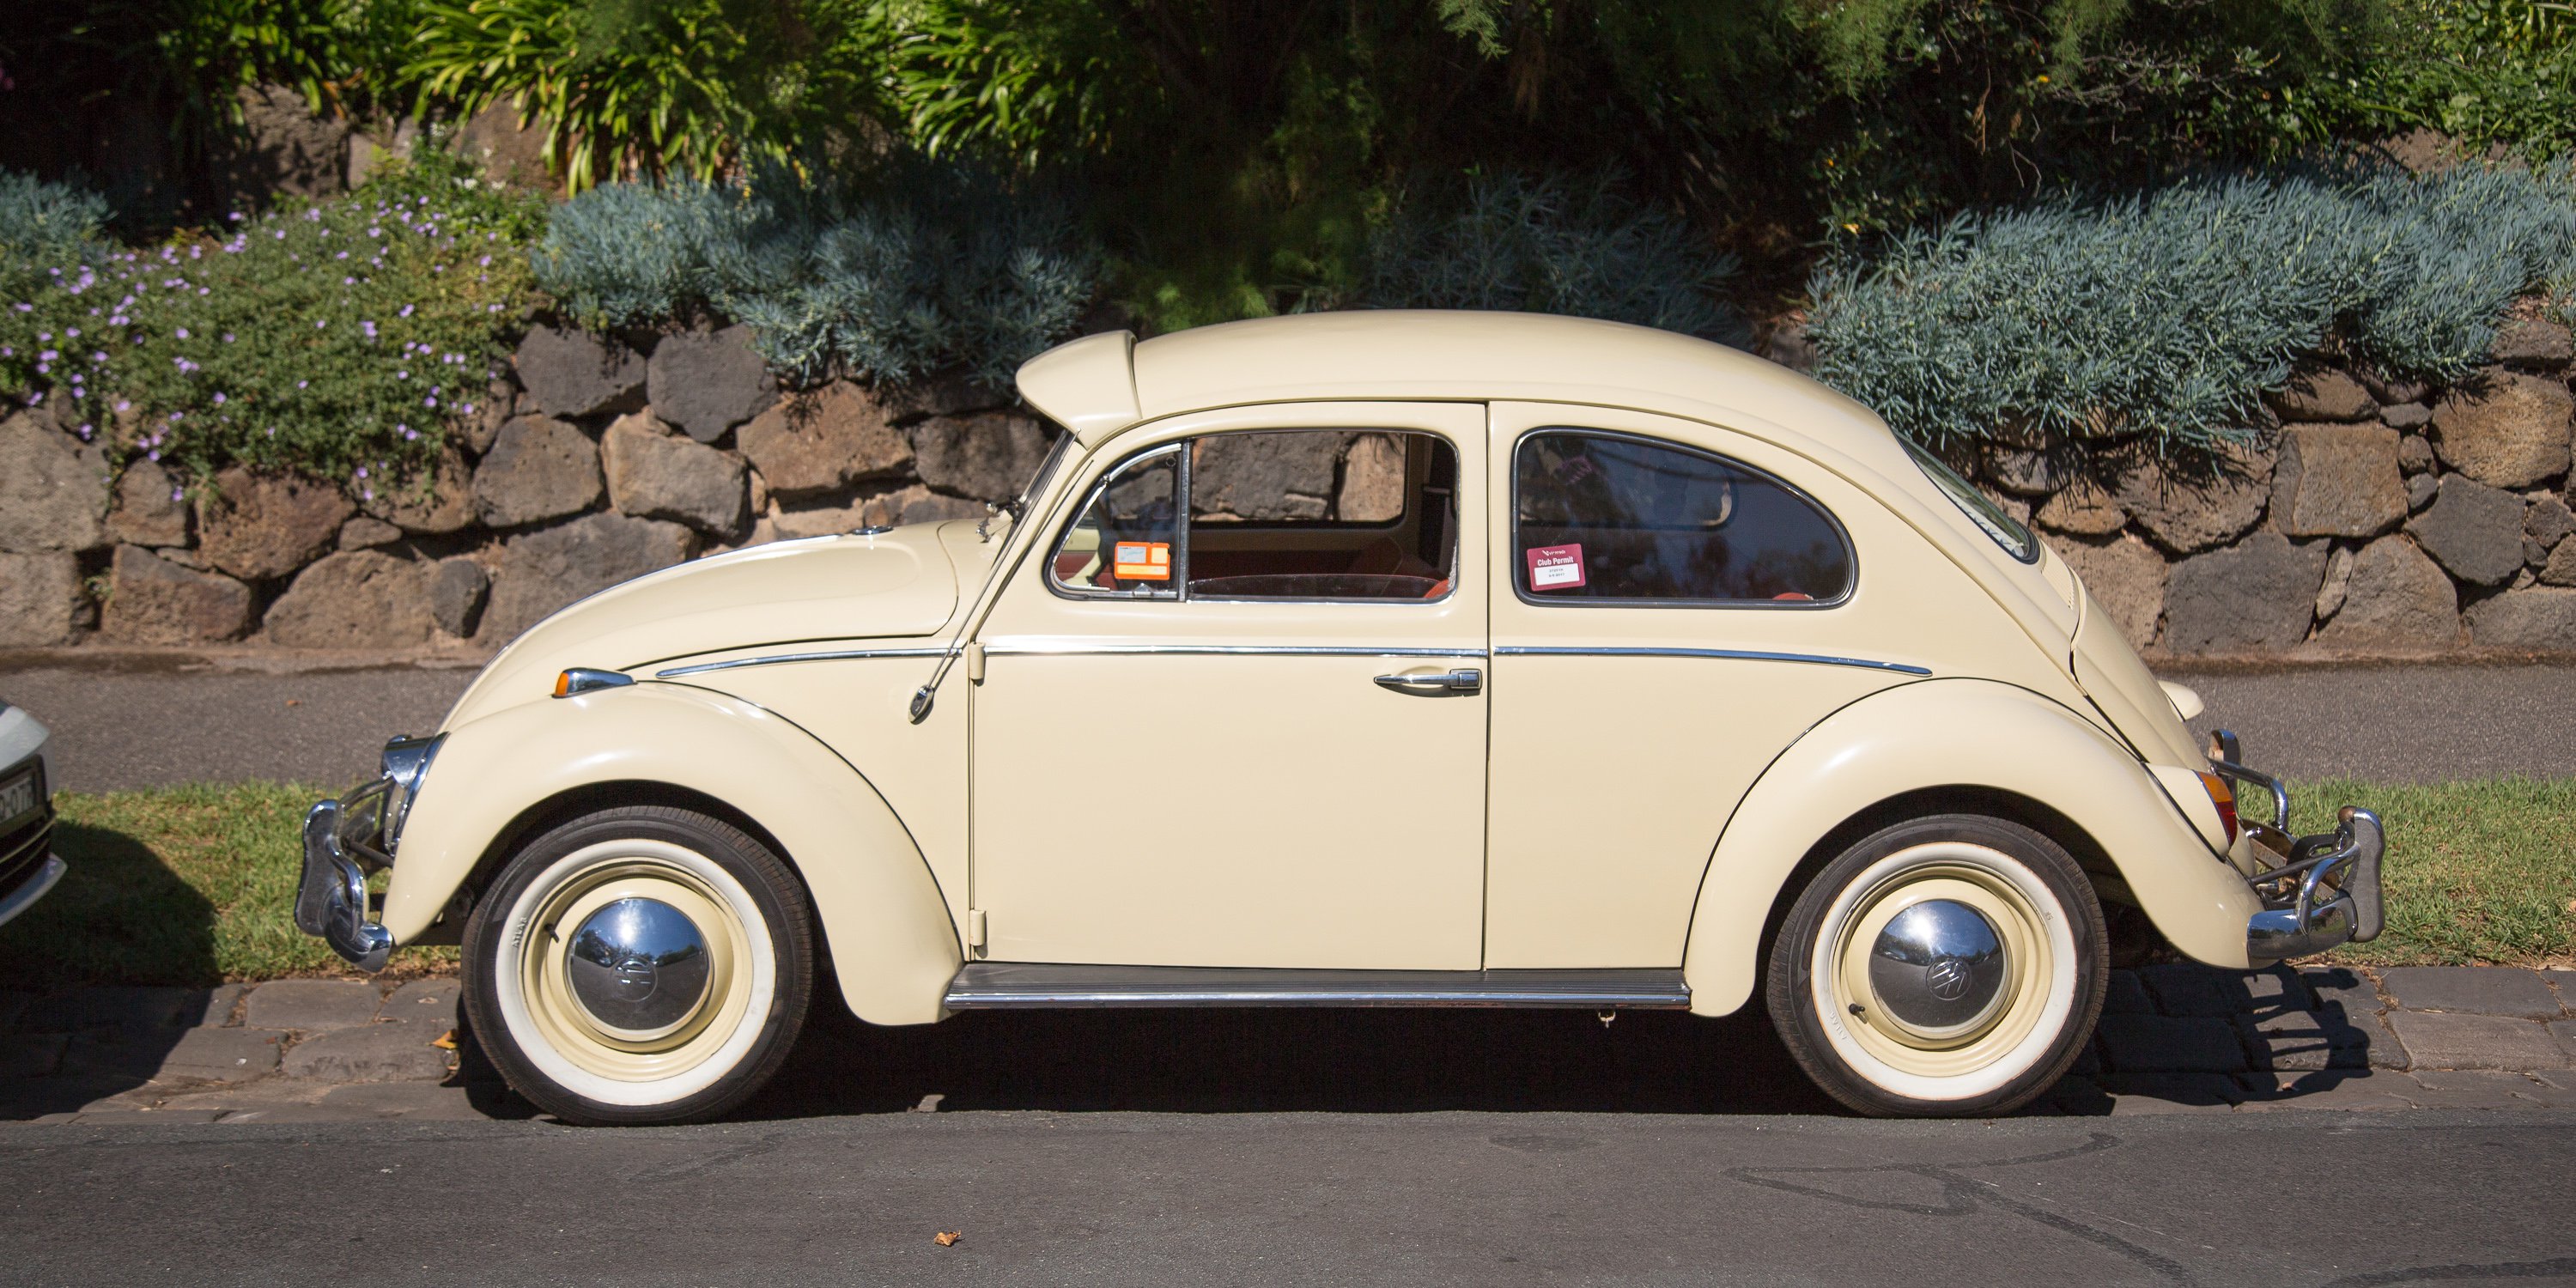 Volkswagen Beetle Old v New: 1965 v 2017 - Photos